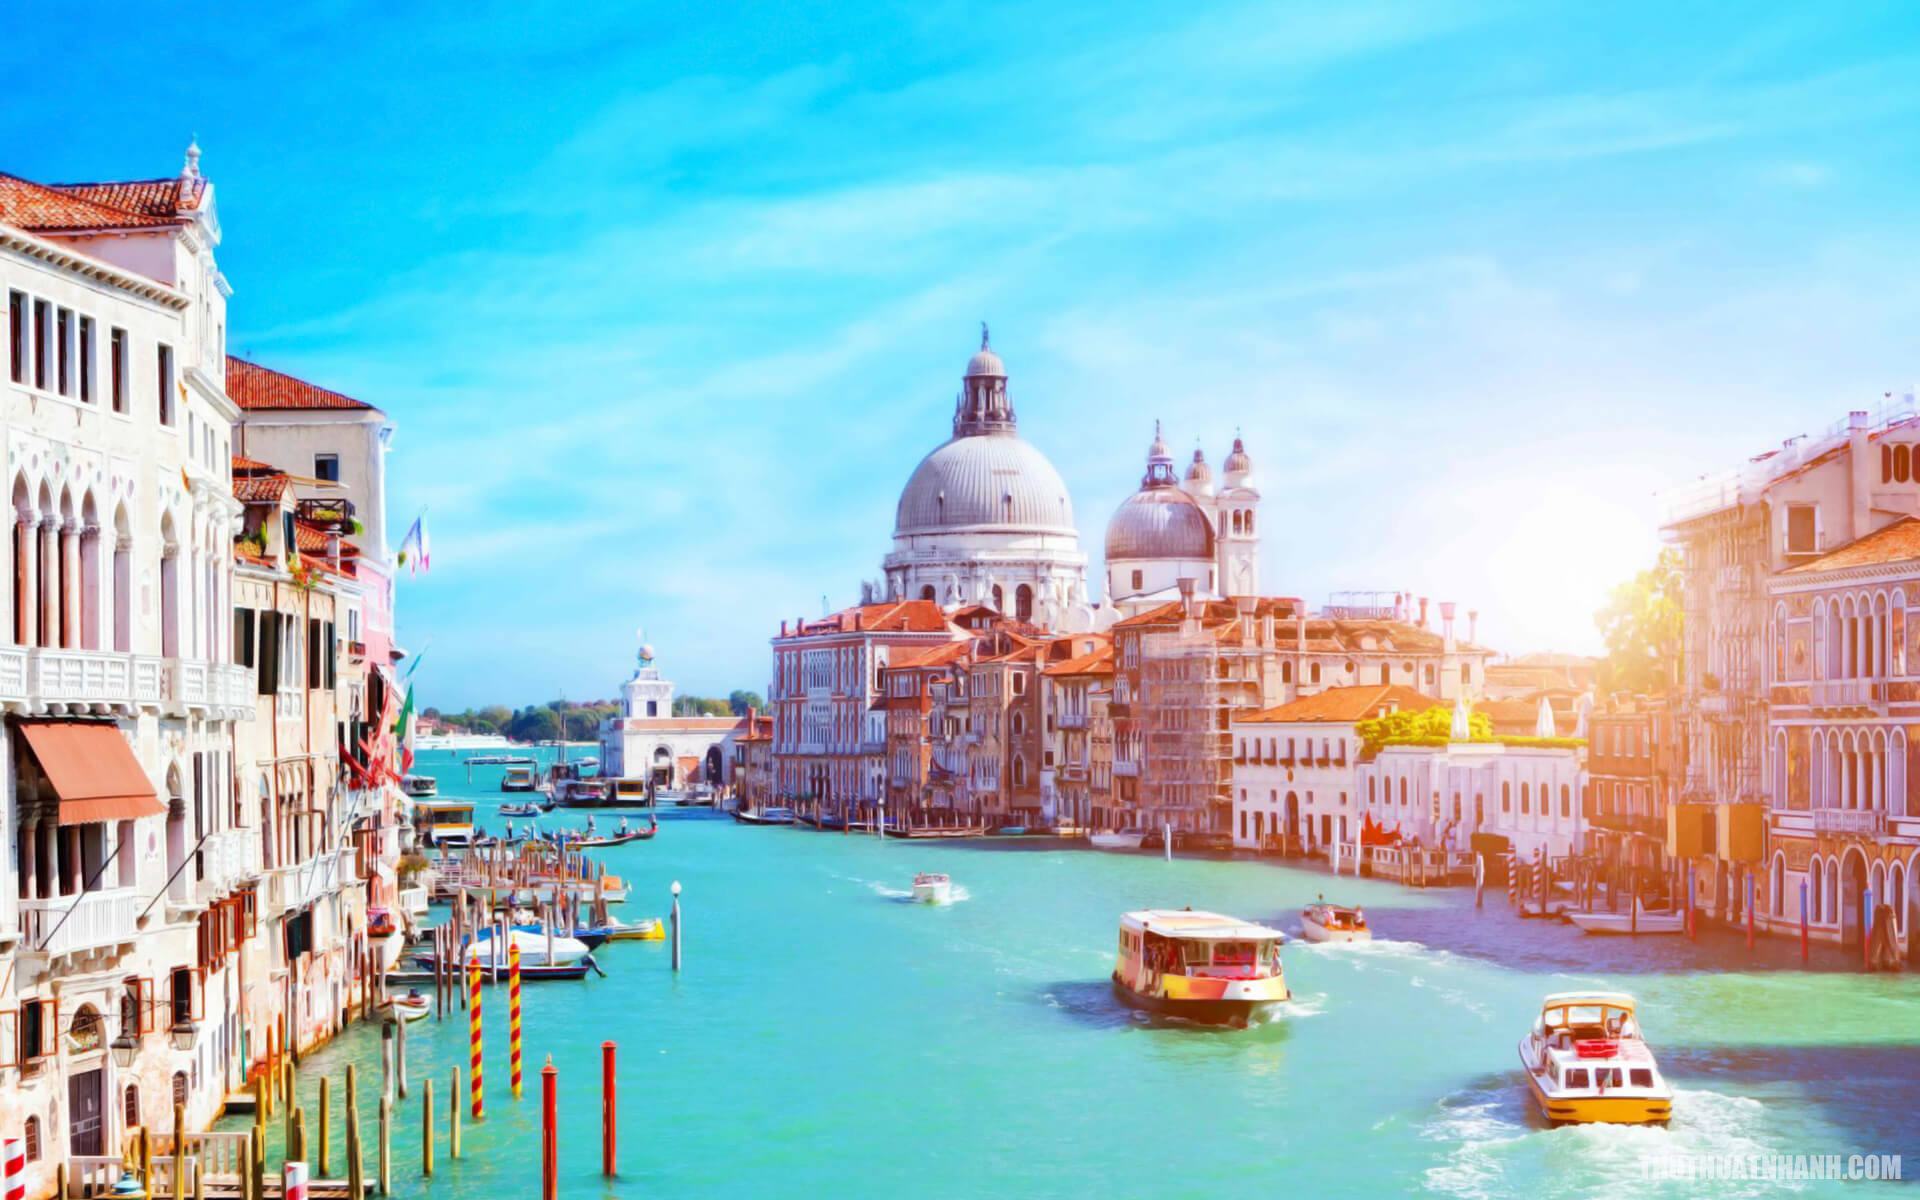 Hình ảnh thành phố Venice đẹp trong nắng